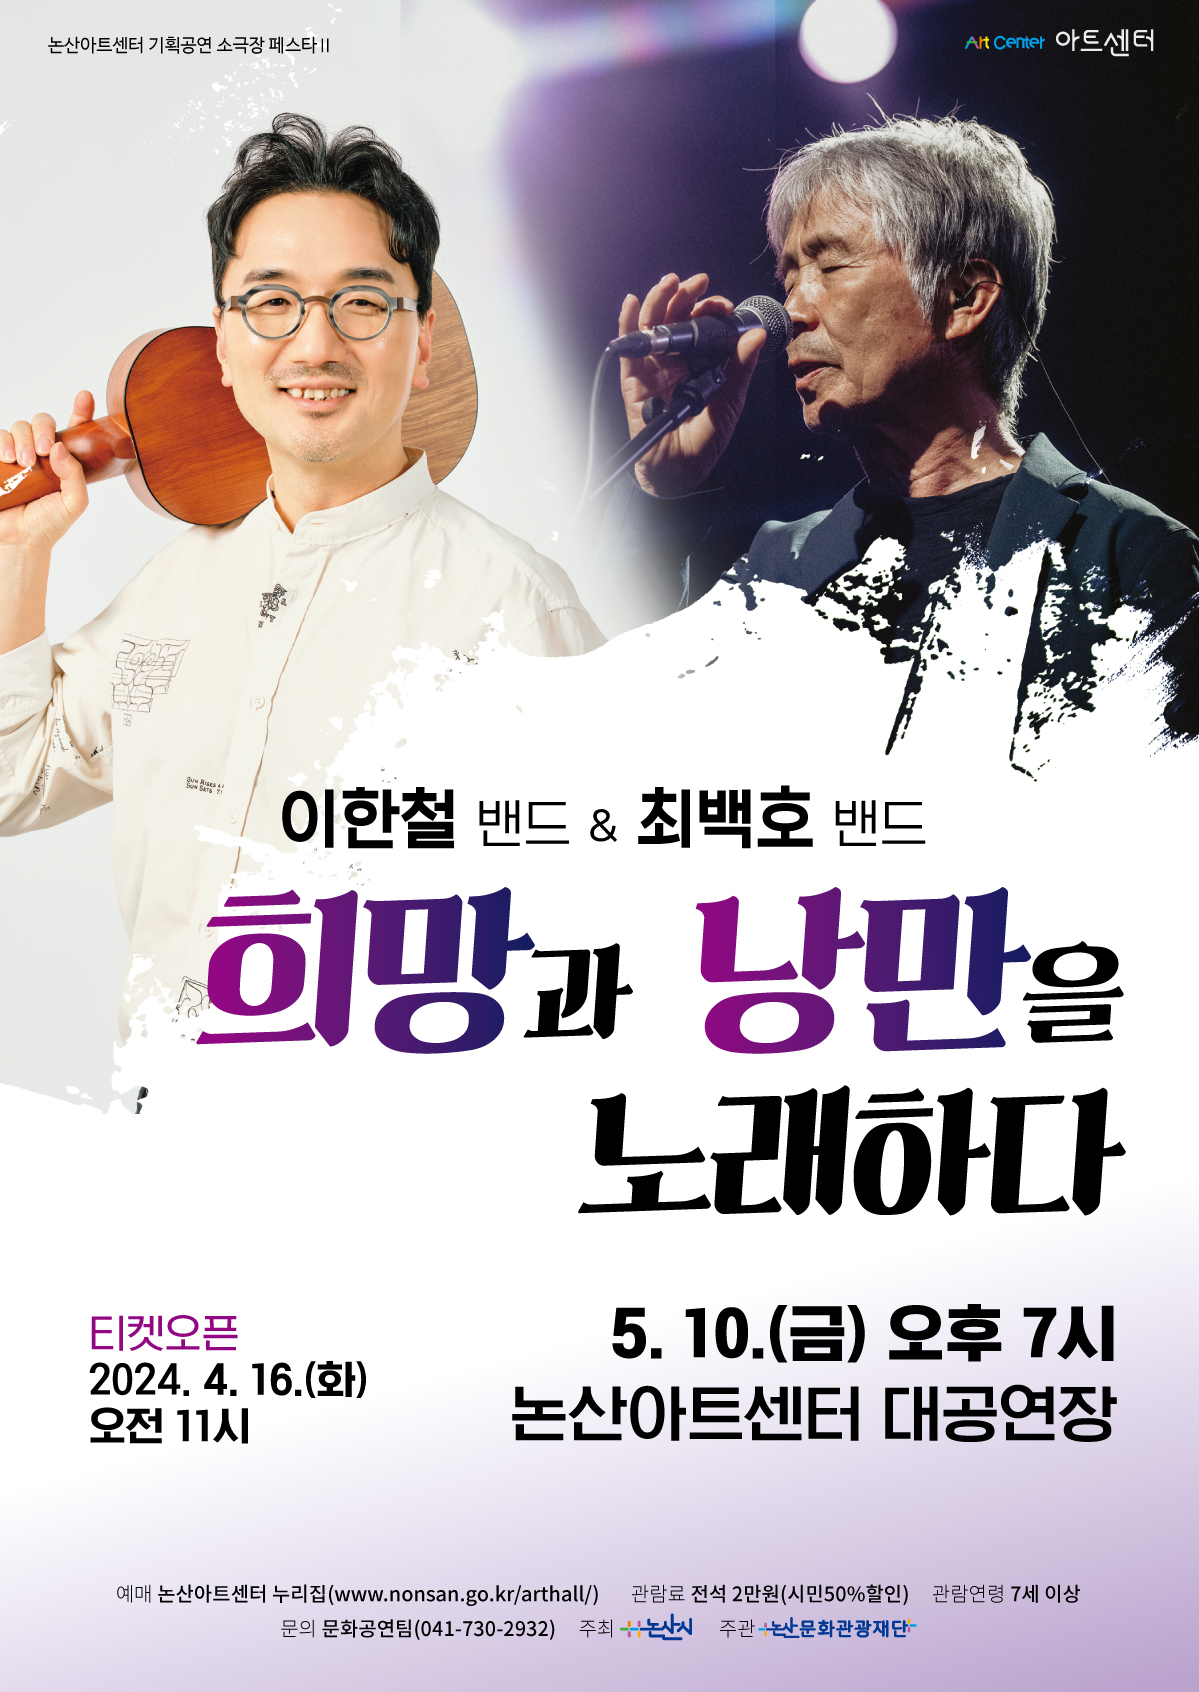 소극장 페스타Ⅱ 콘서트 <희망과 낭만을 노래하다> 공연